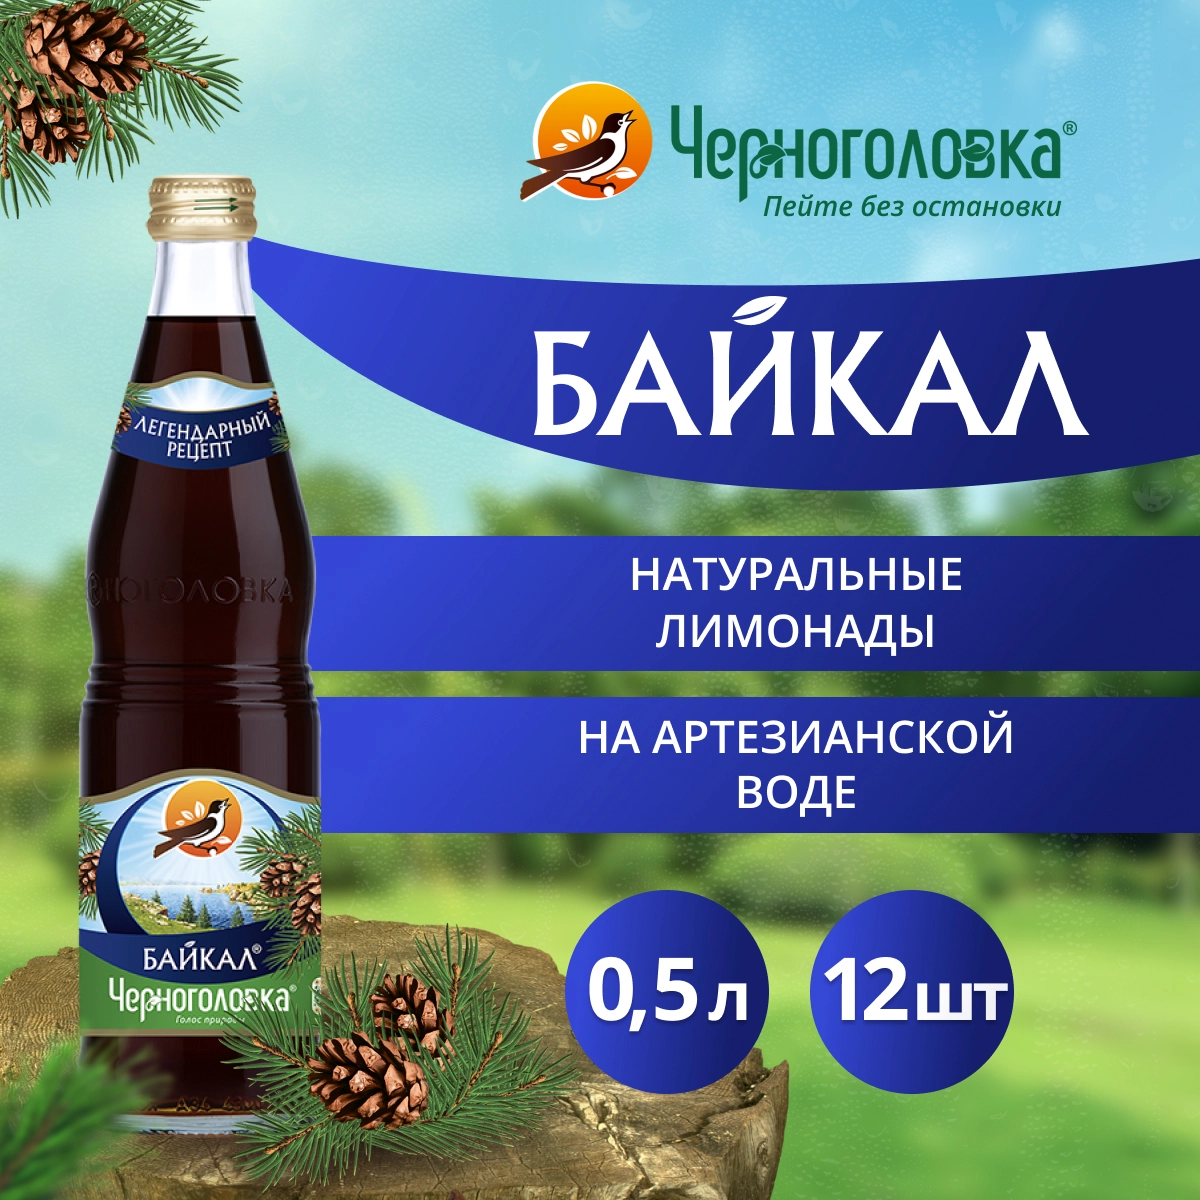 Польза напитка «Байкал»